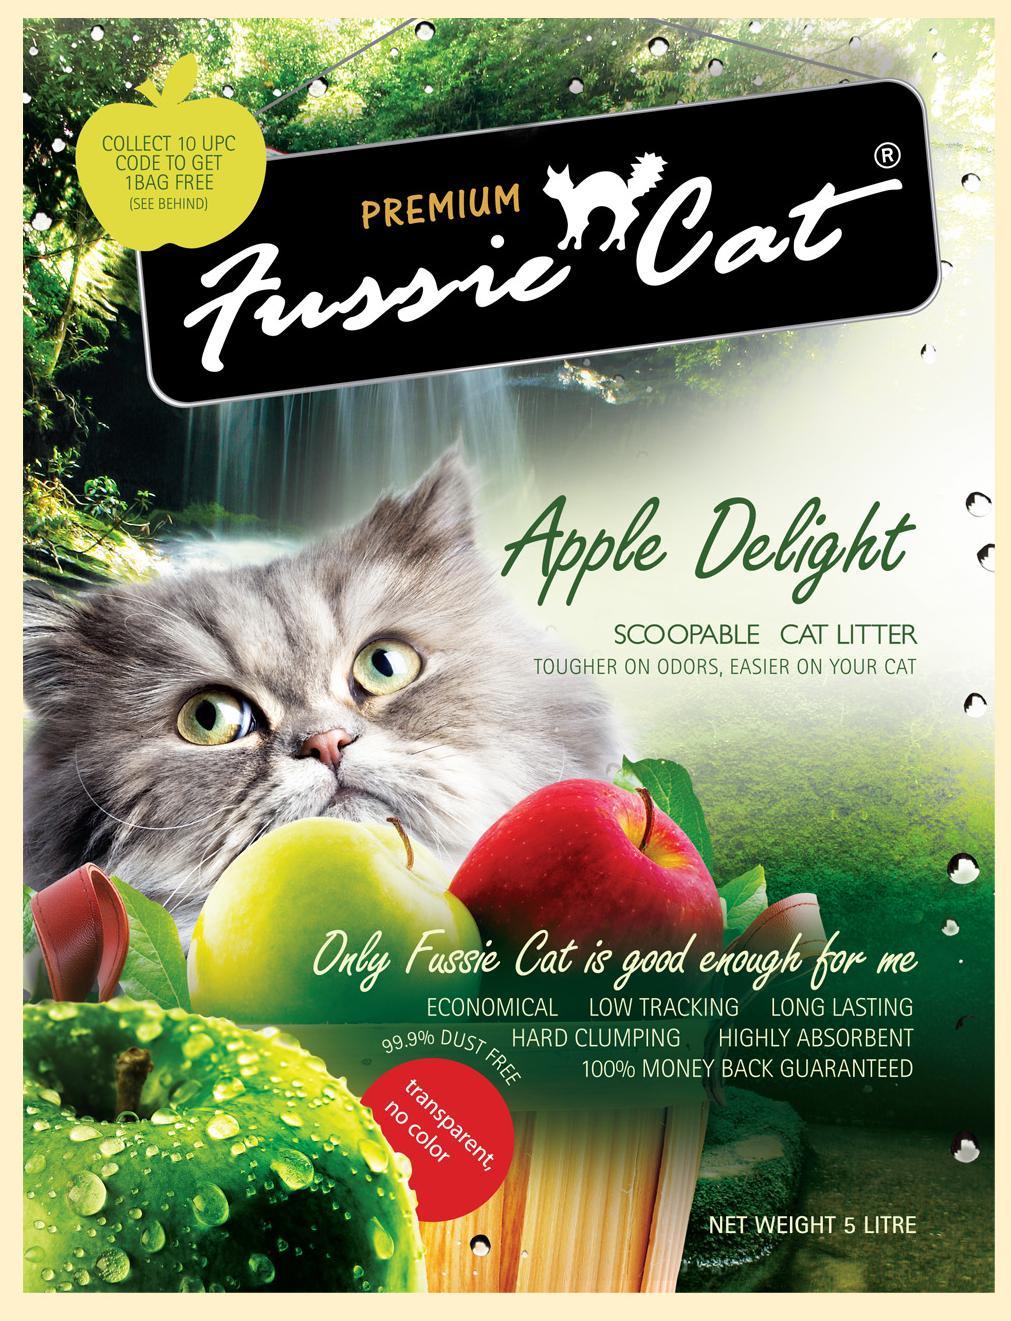 Fussie Cat 高竇貓礦物貓砂 (10 種味道) - Pet Pet Plaza